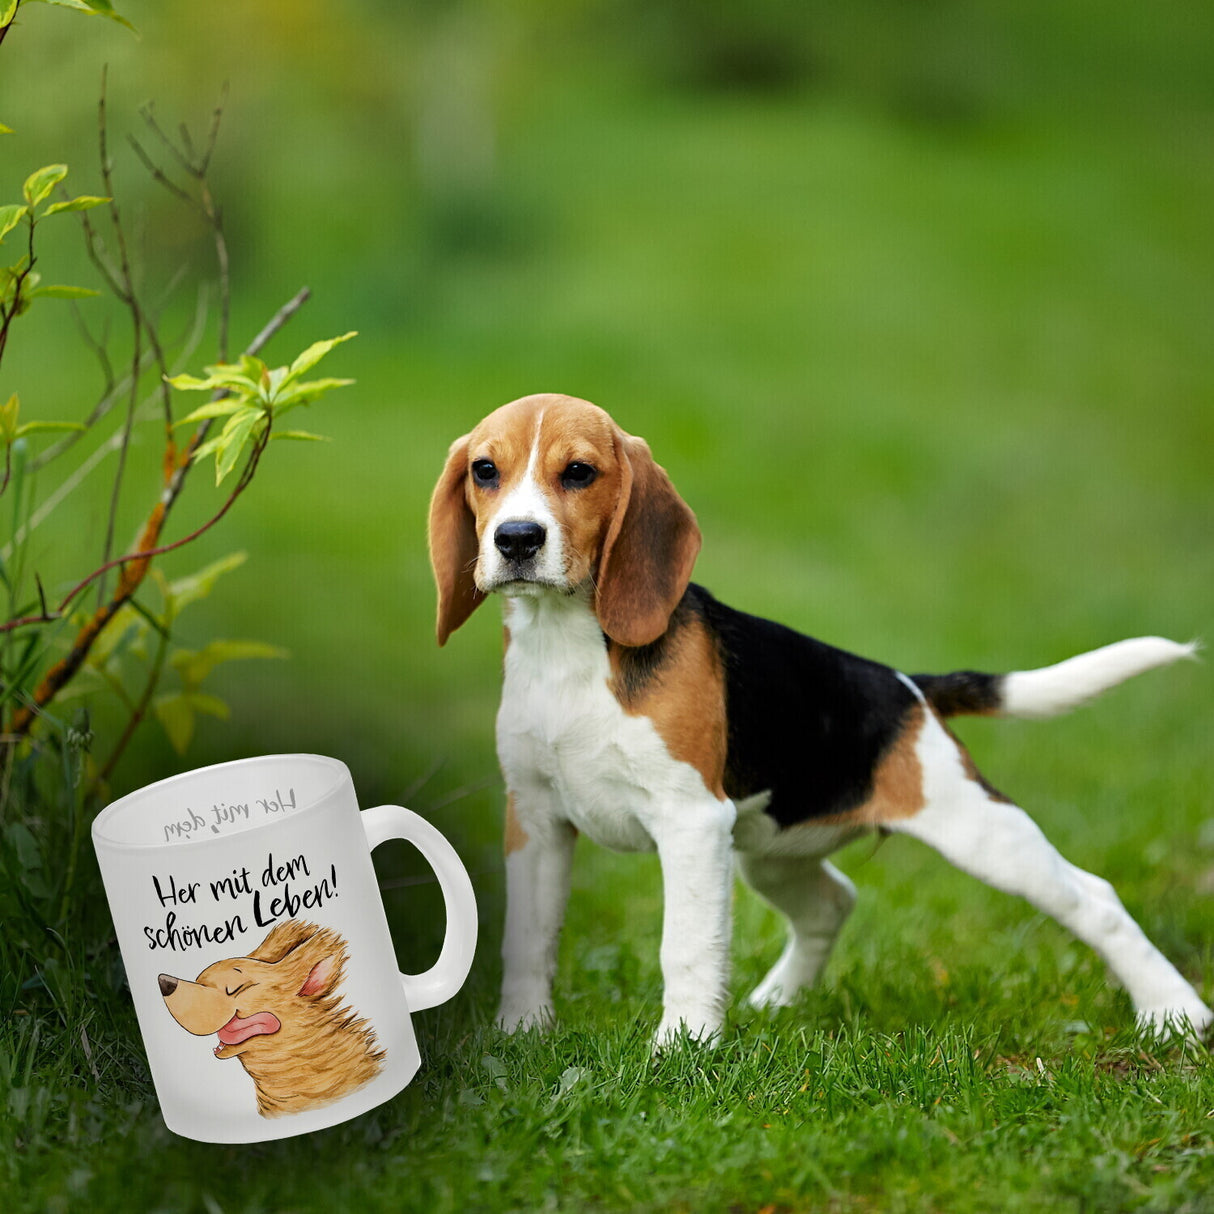 Hund Kaffeebecher mit Spruch Her mit dem schönen Leben